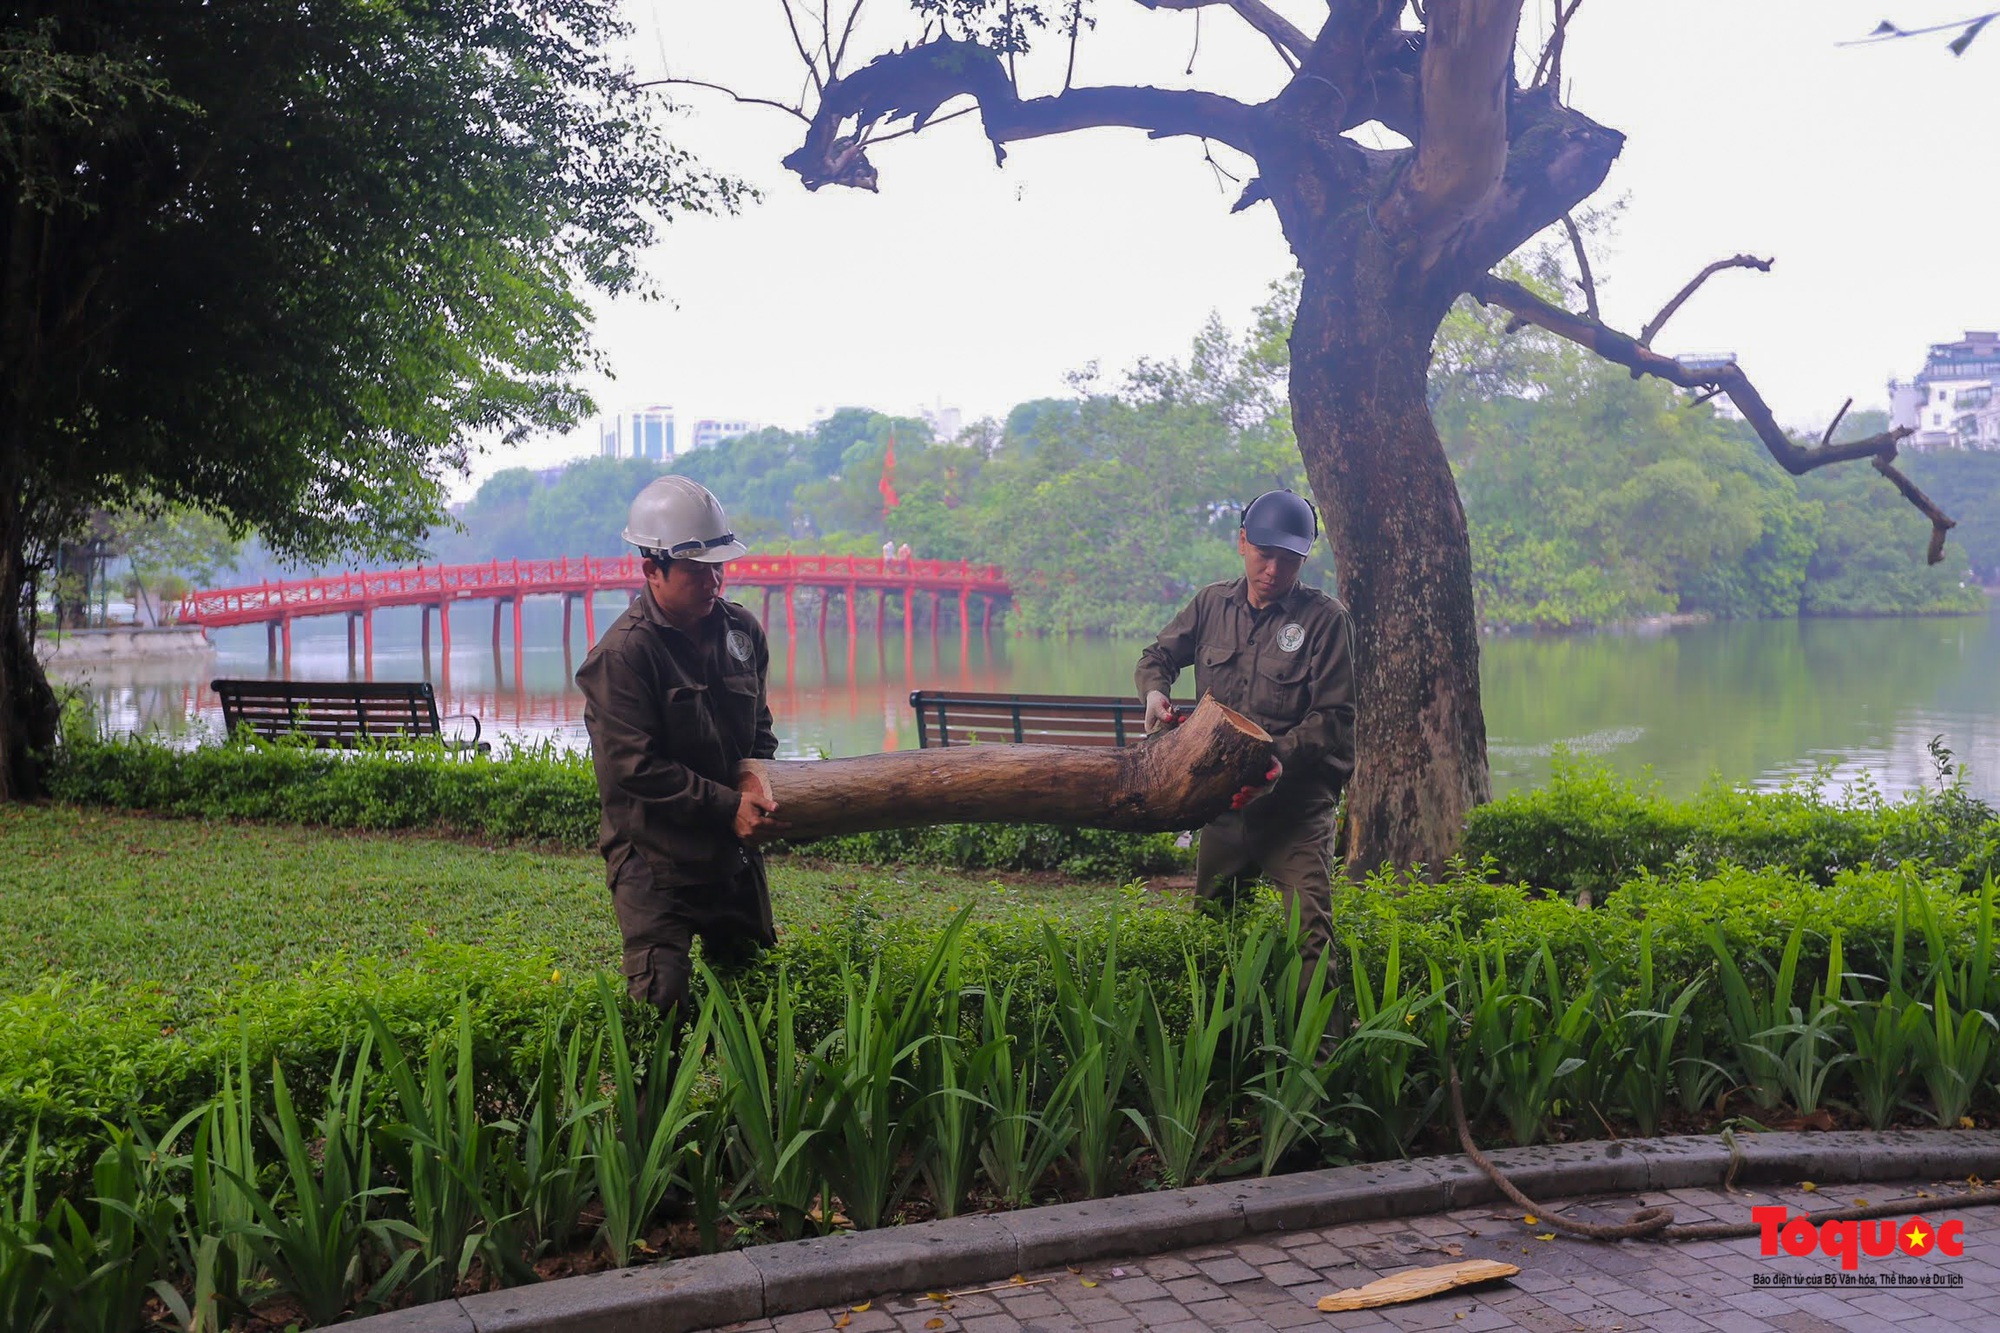 Hà Nội chặt hạ 3 cây sưa đỏ chết khô bên hồ Hoàn Kiếm - Ảnh 6.